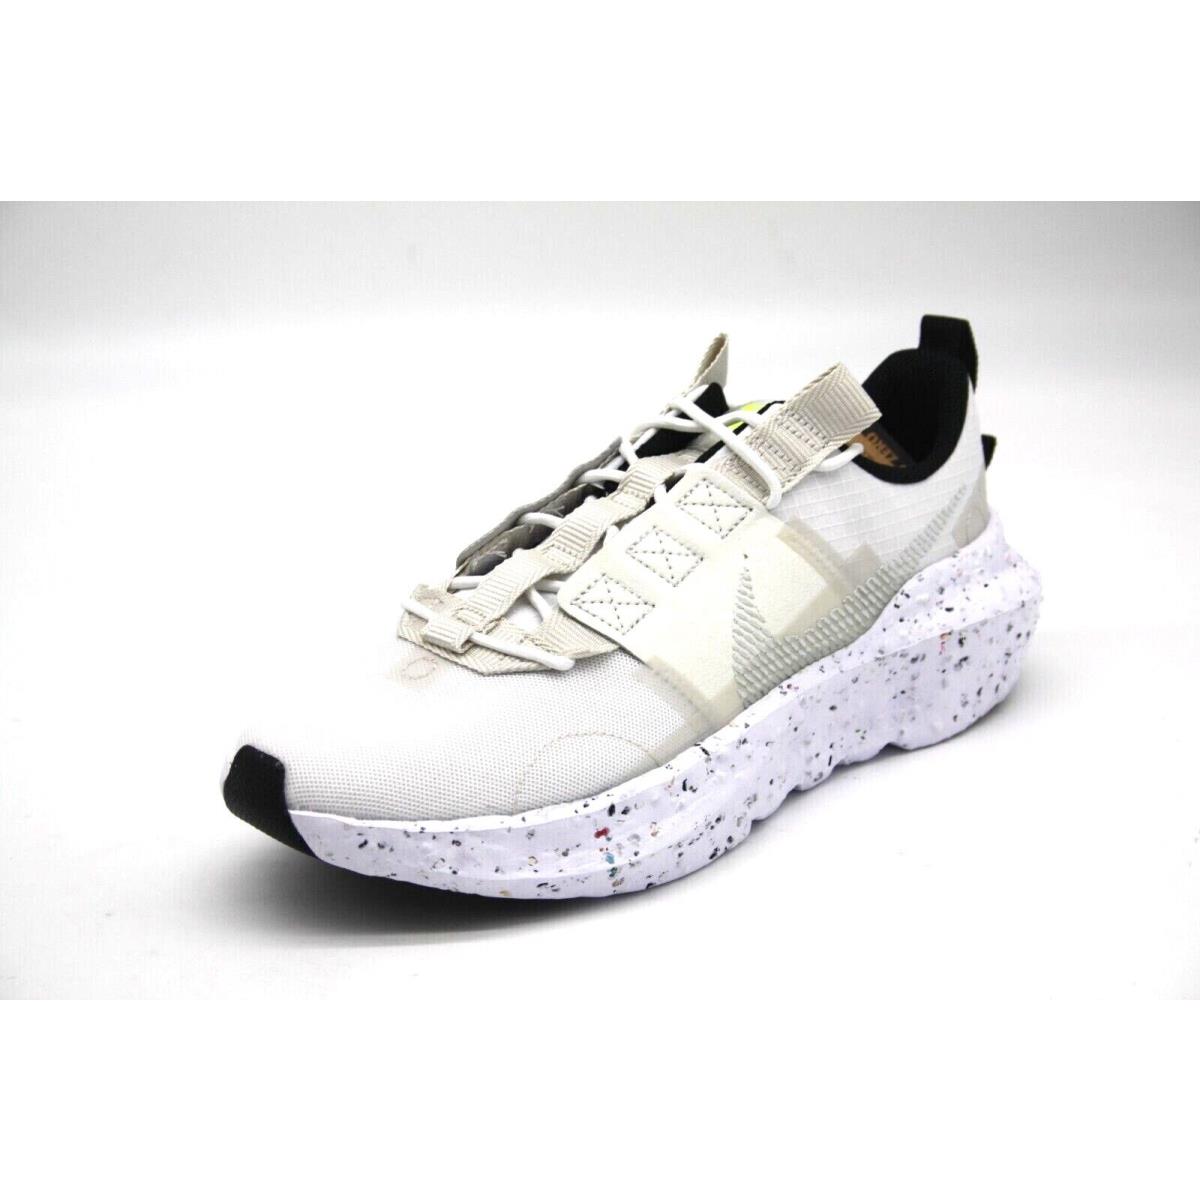 Nike shoes Crater Impact - WHITE/LIGHT BONE-SAIL-VOLT 0